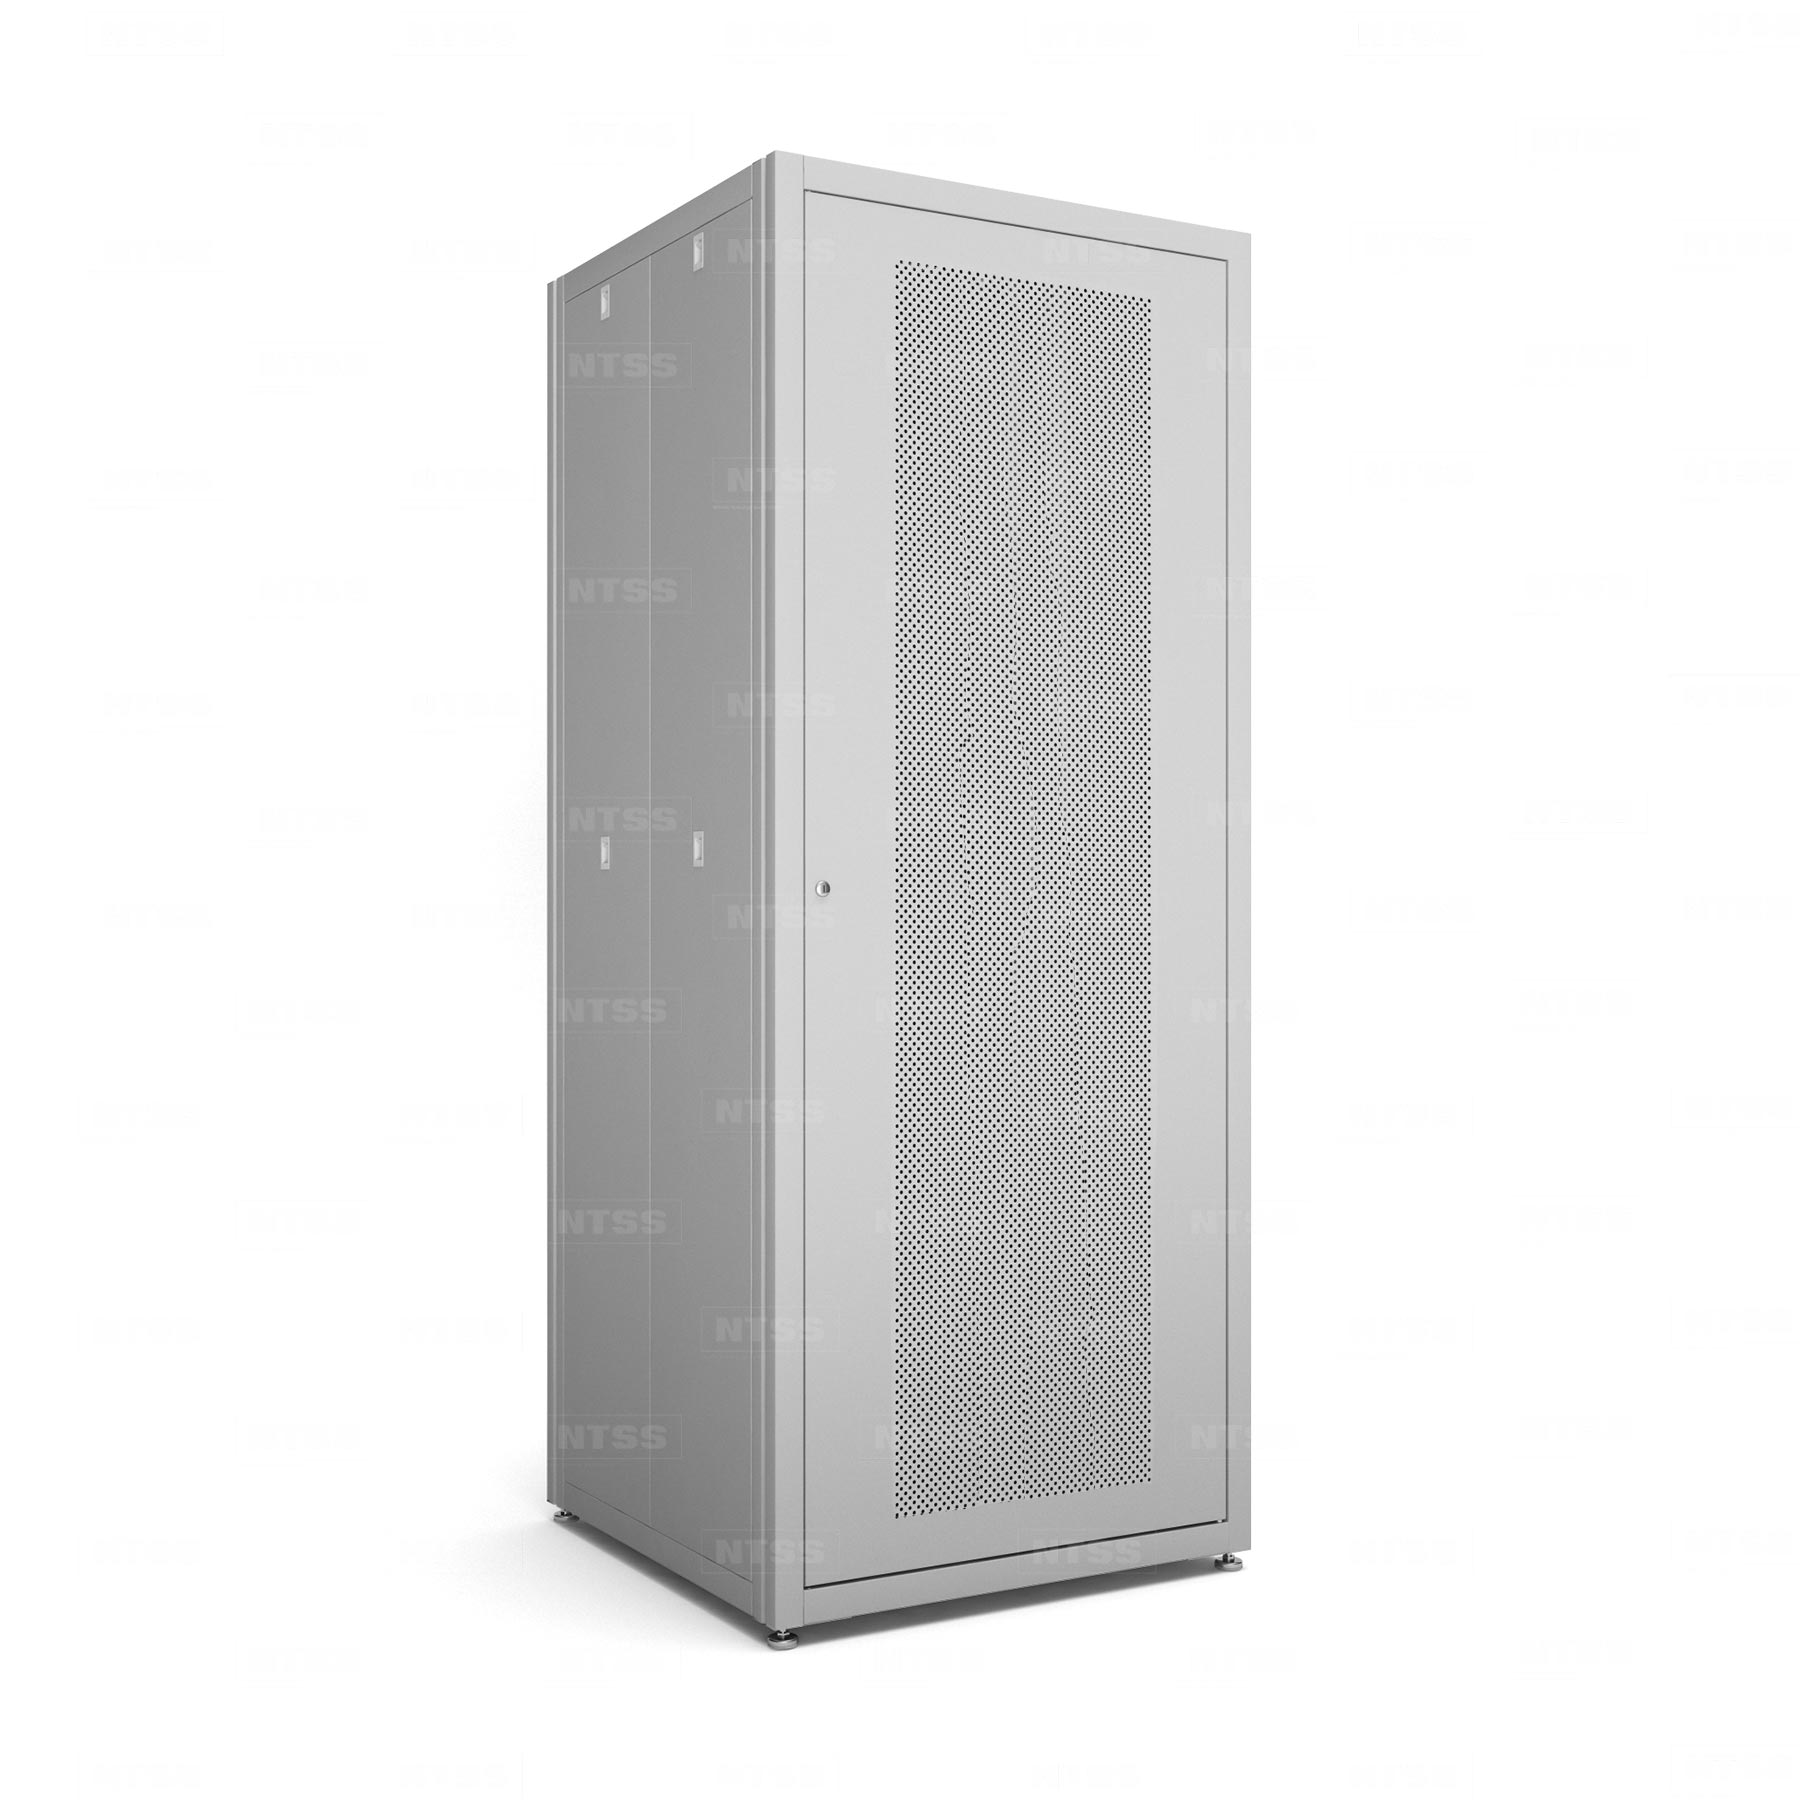 19" напольный шкаф "СТАНДАРТ" 47U 800x800 мм, передняя дверь перфорация, боковые стенки съемные 